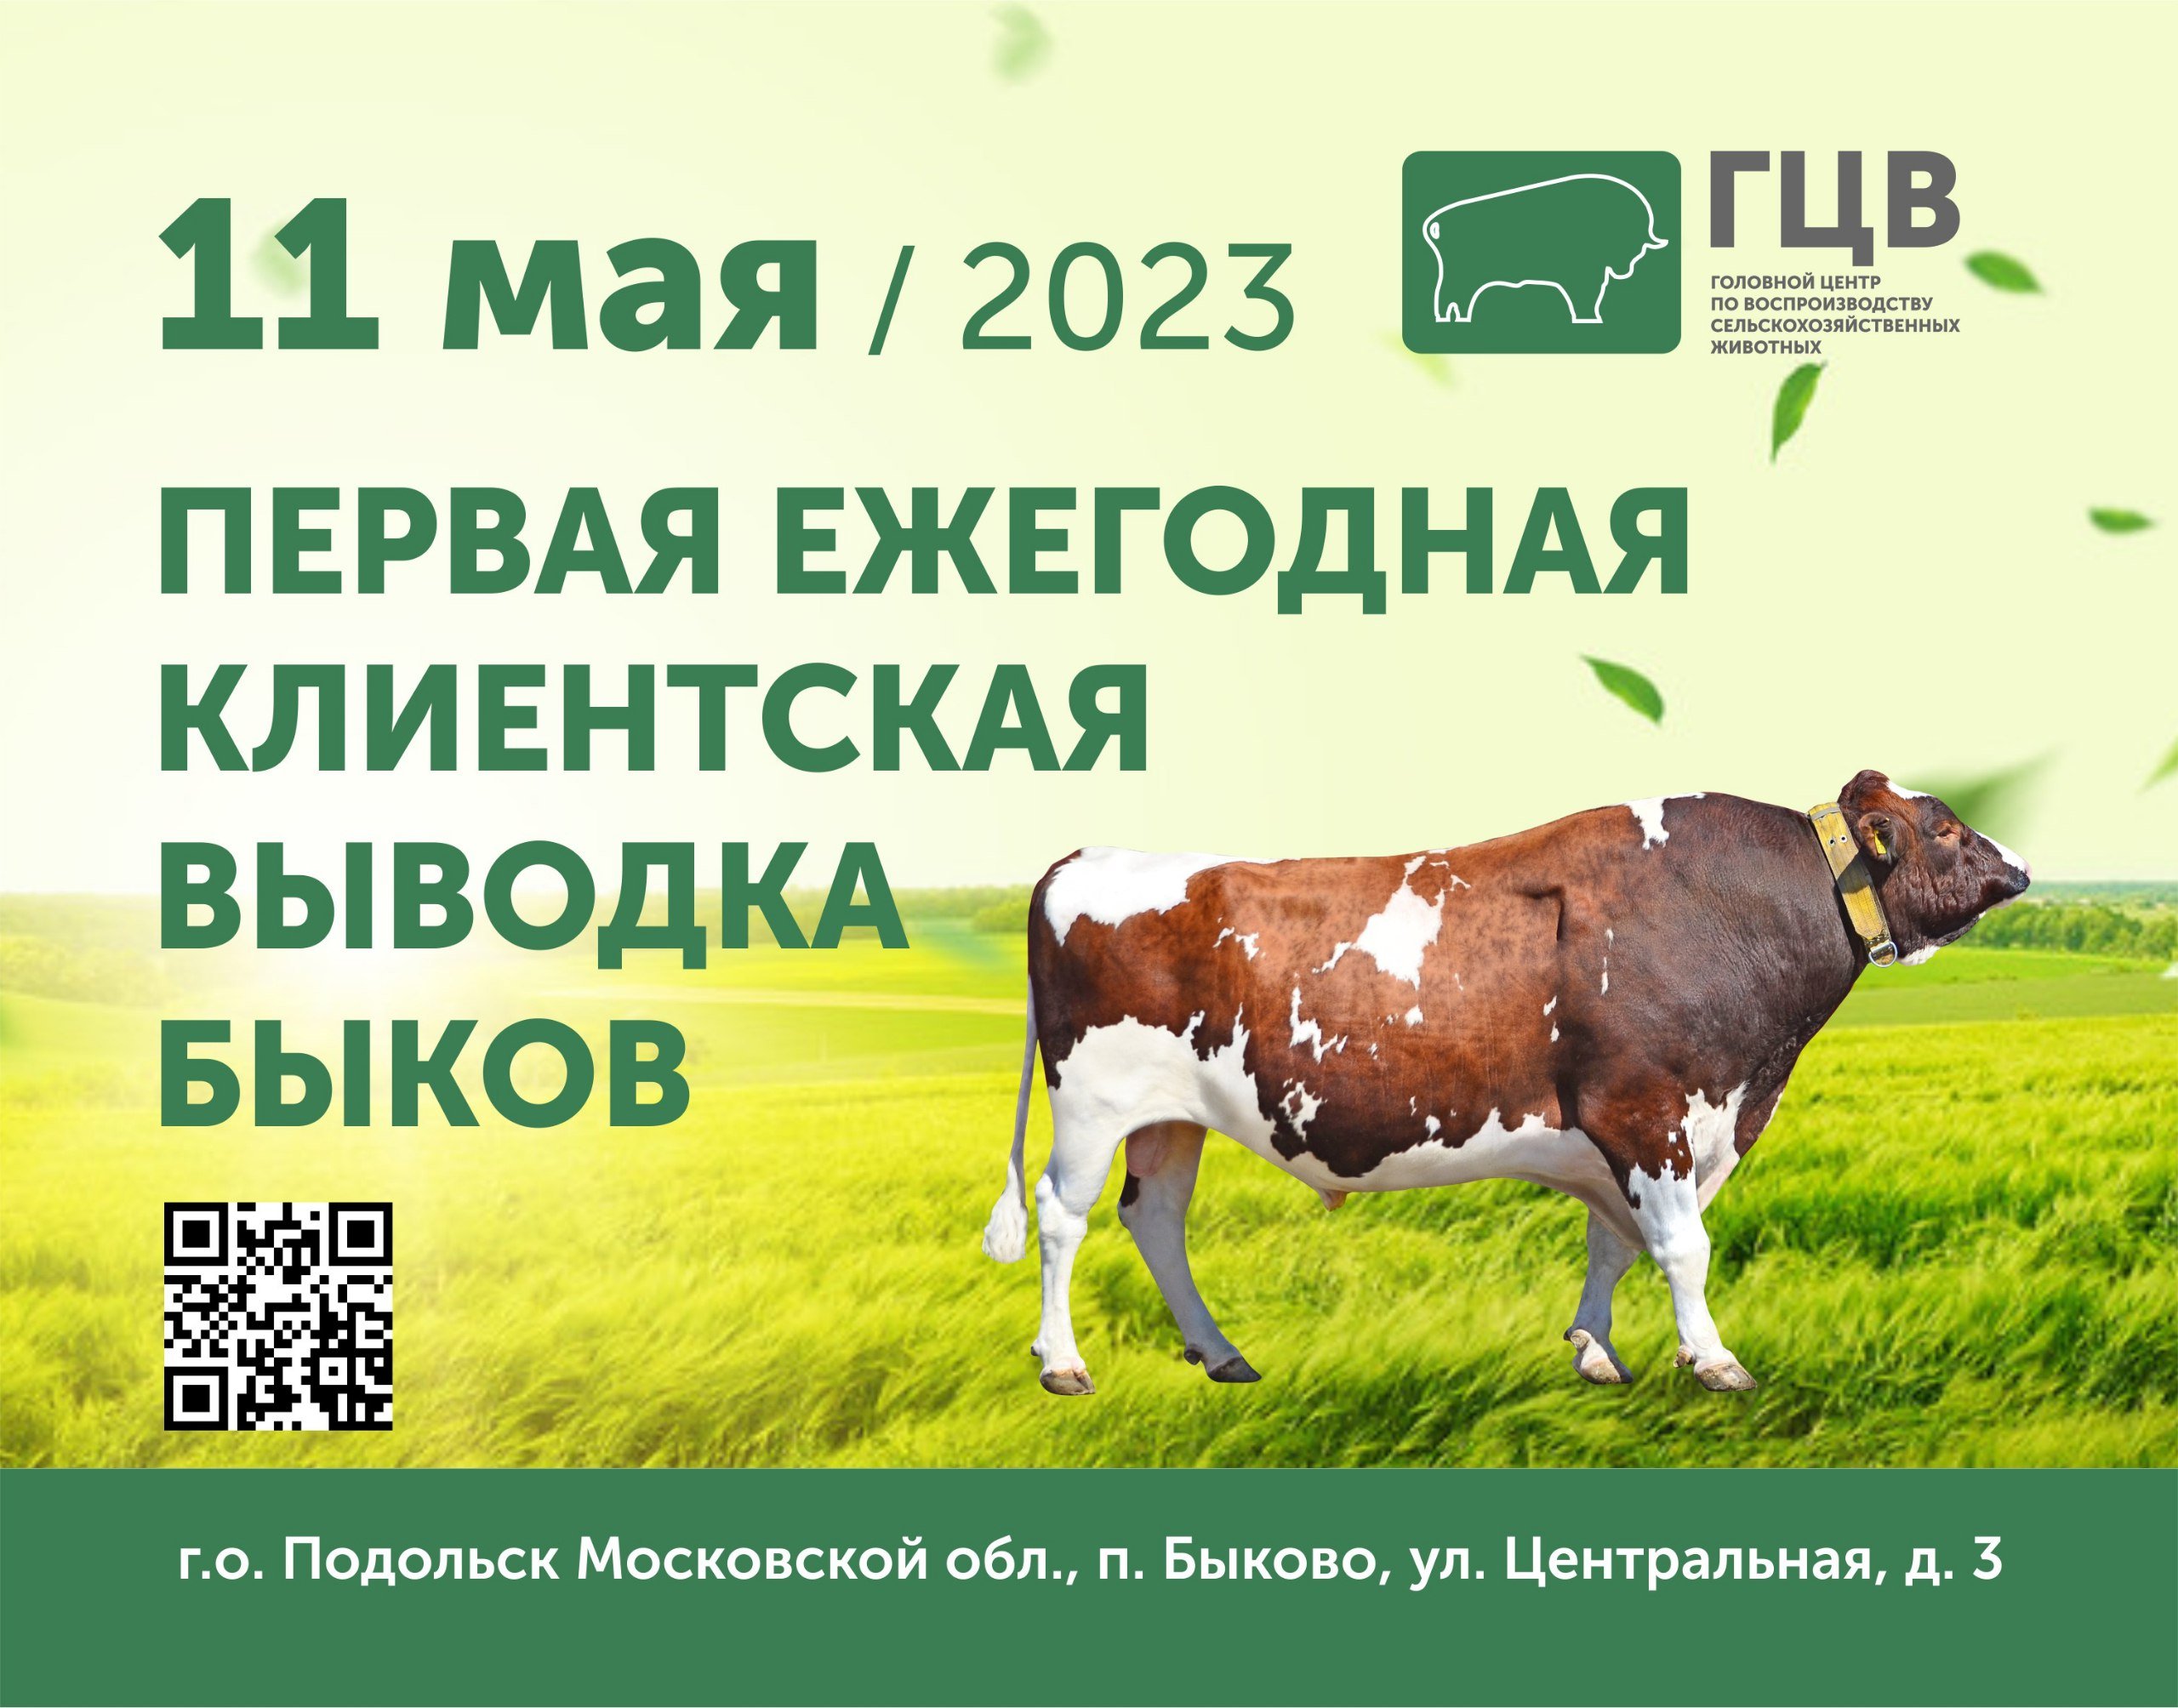 Выводка быков производителей 11.05.2023